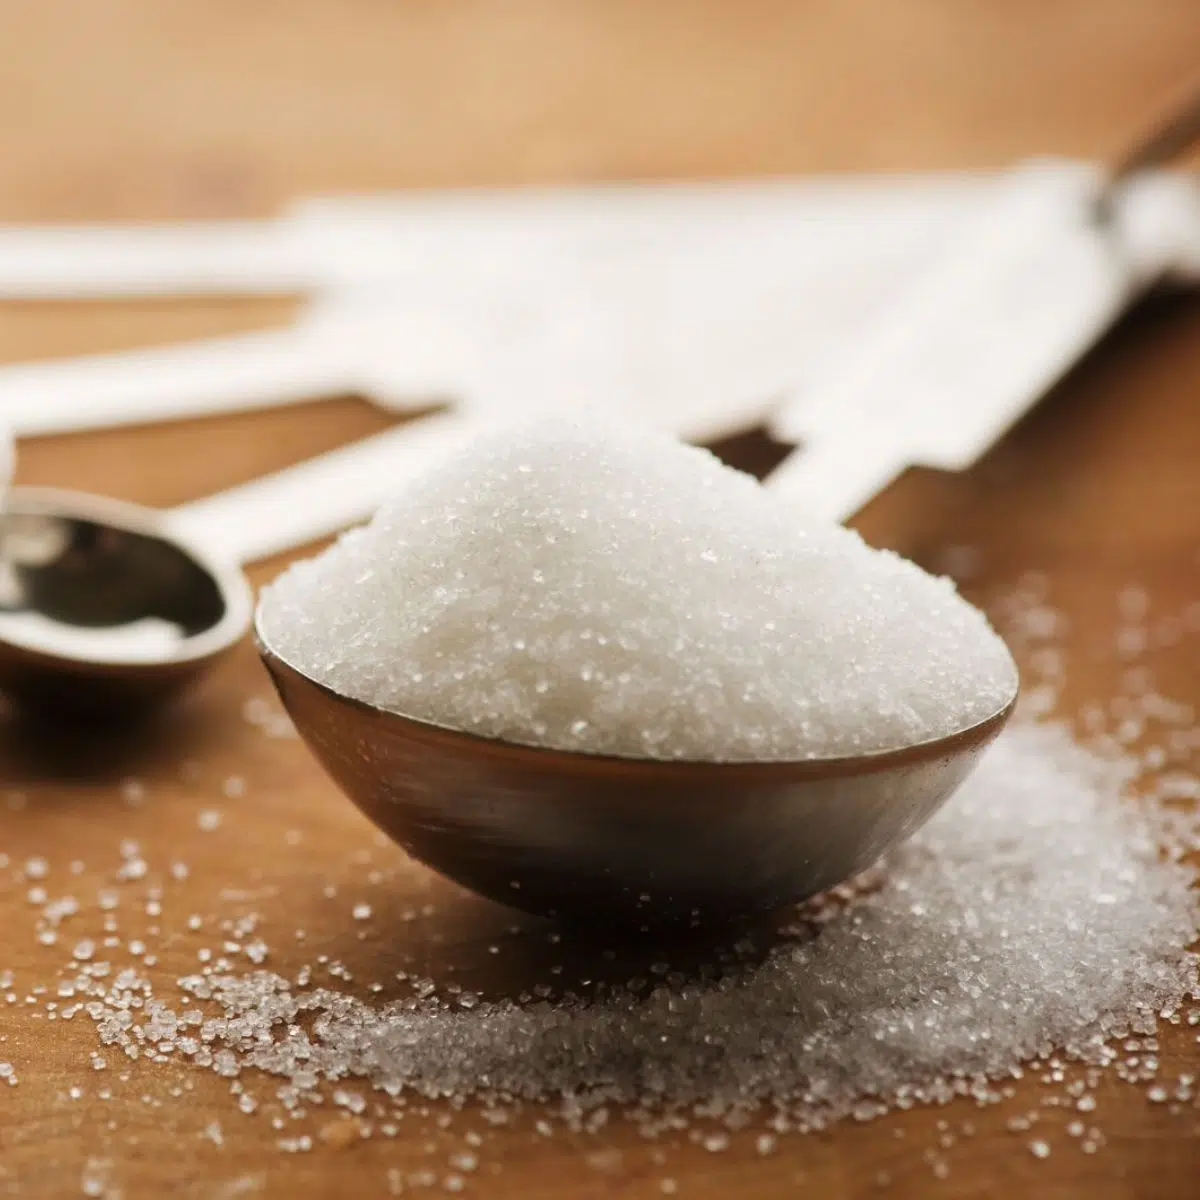 كيفية تحويل جرامات السكر إلى ملاعق طعام بسهولة أثناء الخبز.